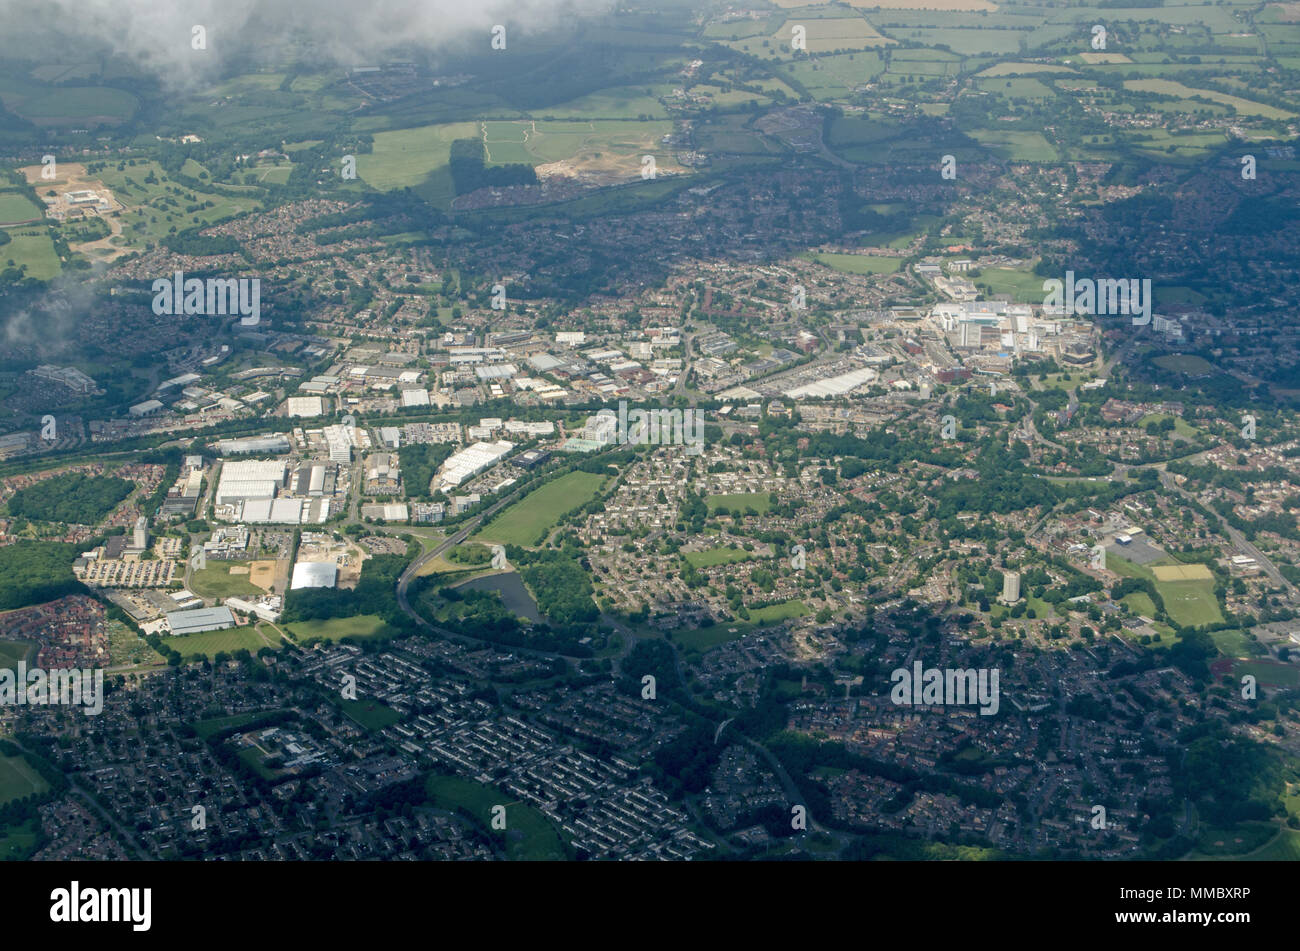 Vue aérienne de la ville de Bracknell Berkshire complet avec des immeubles de bureaux, centre commercial et des quartiers d'habitations. Banque D'Images